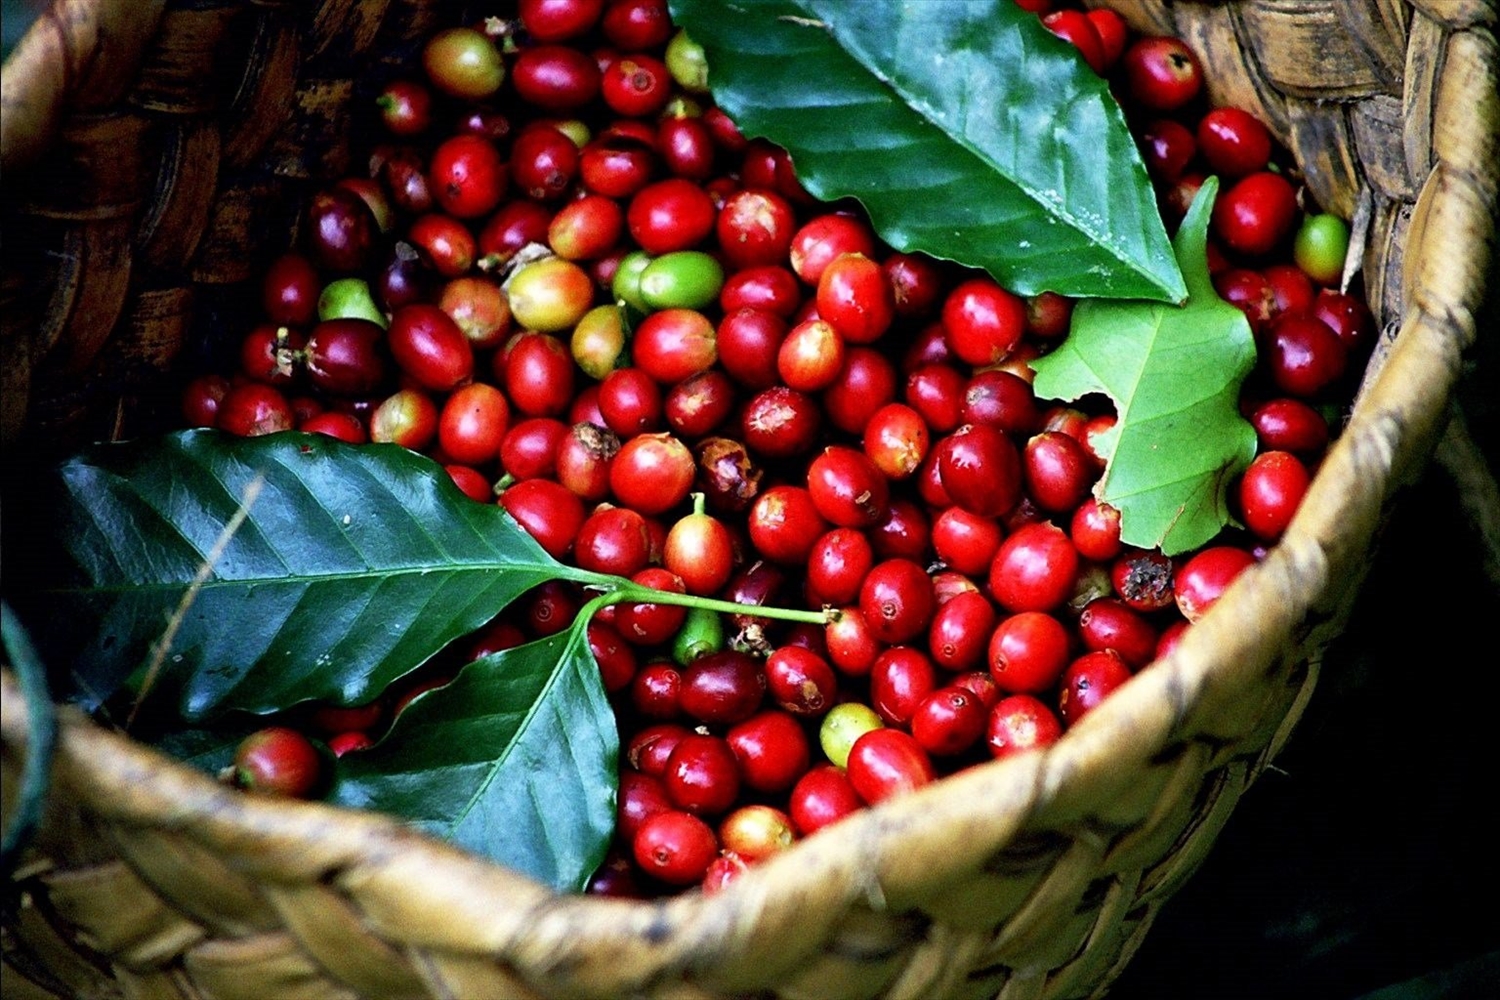 Hôm nay giá cà phê tại các vùng trồng trọng điểm trong nước giao dịch quanh mức 37.000 - 37.900 đồng/kg